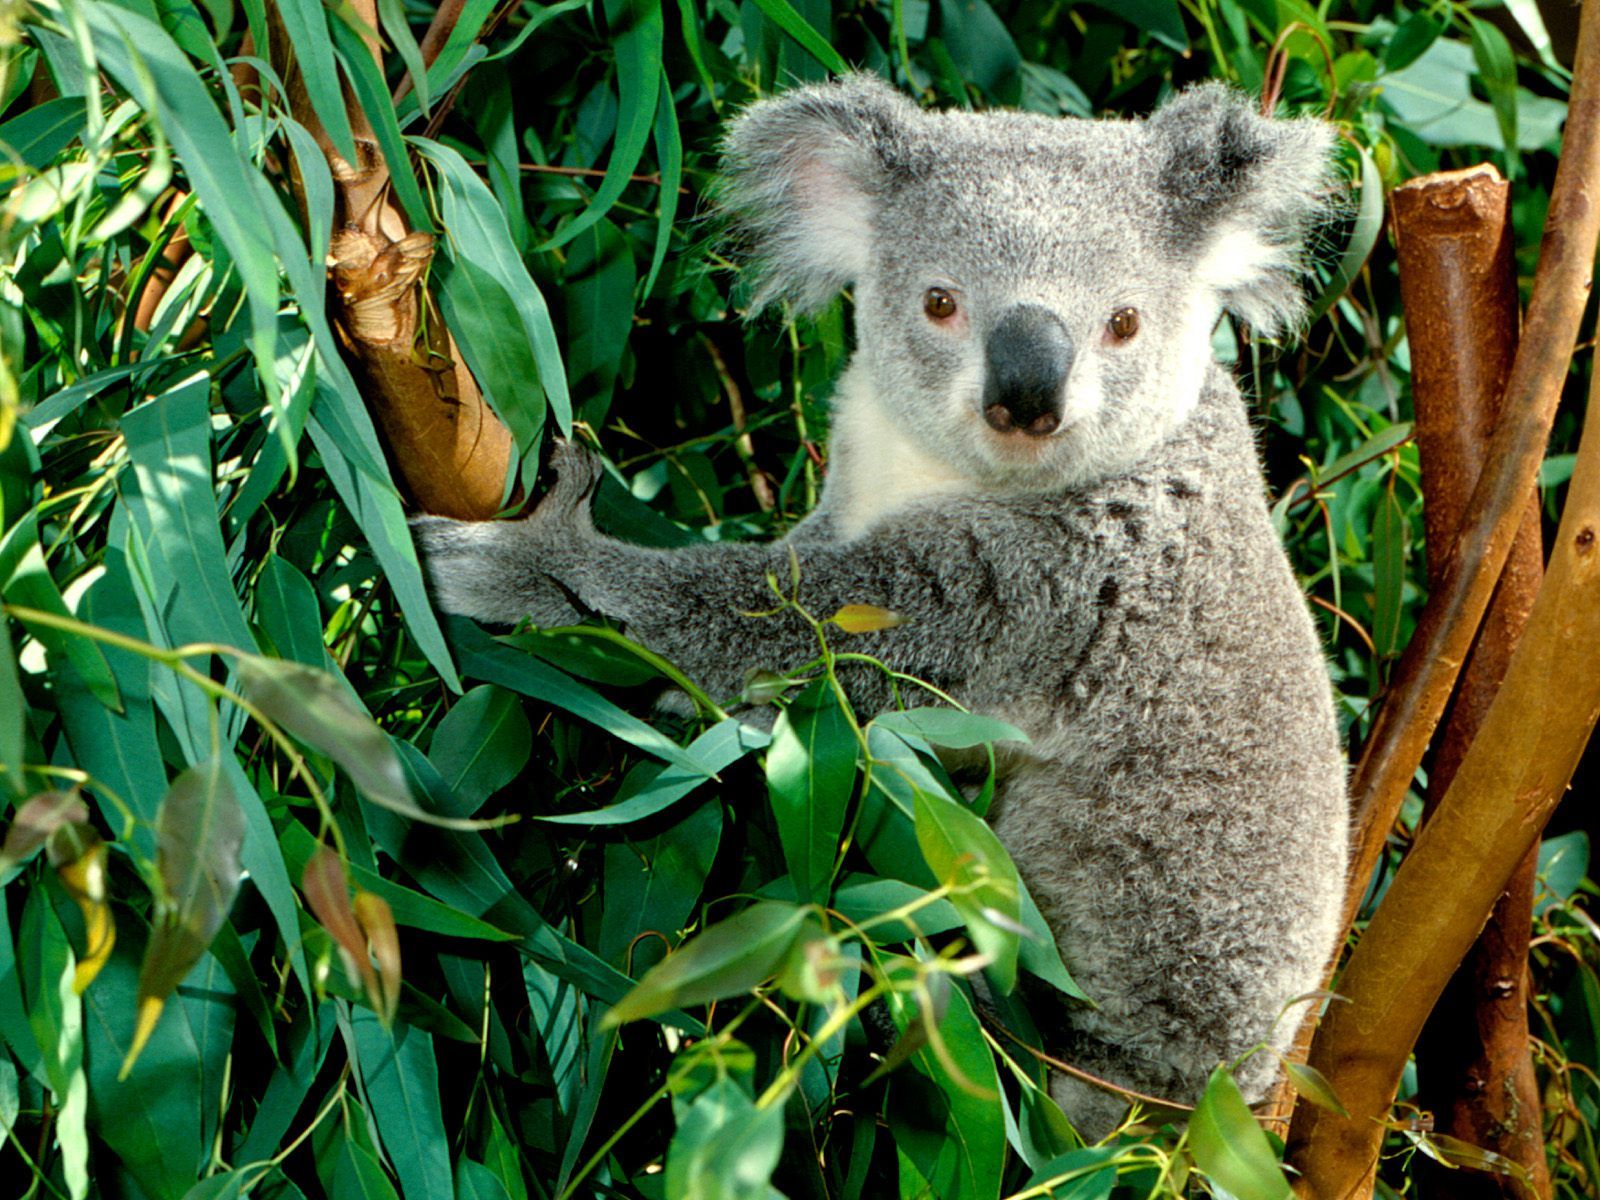 australia | Koala - Australia Wallpaper (23340501) - Fanpop fanclubs ...